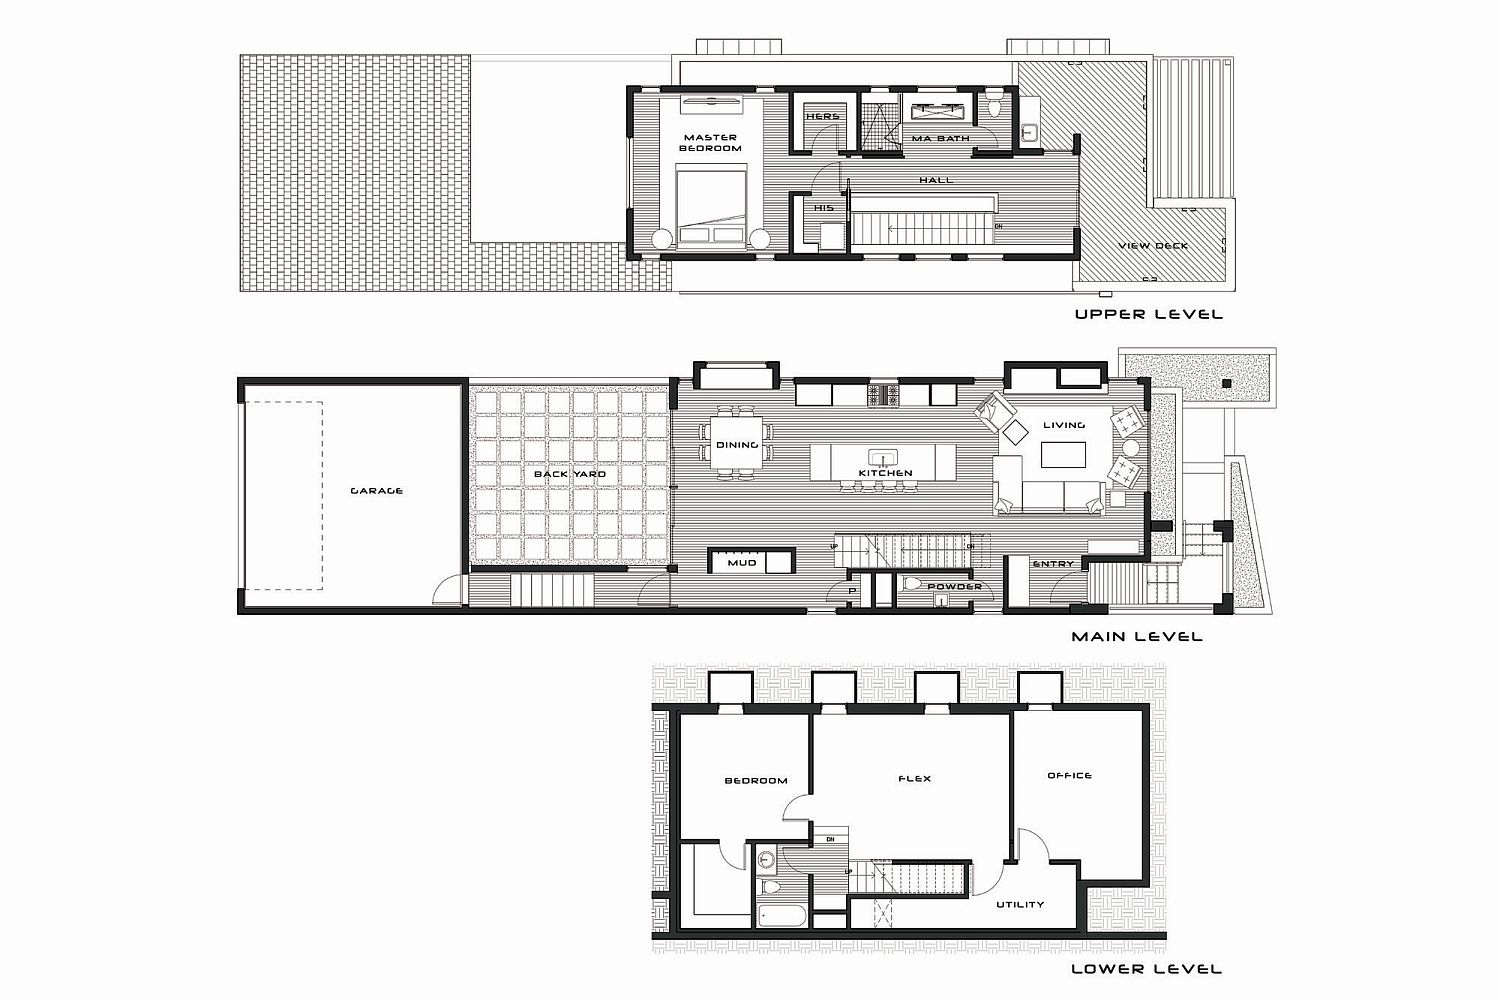 Floor plan of 33rd Street House in Denver